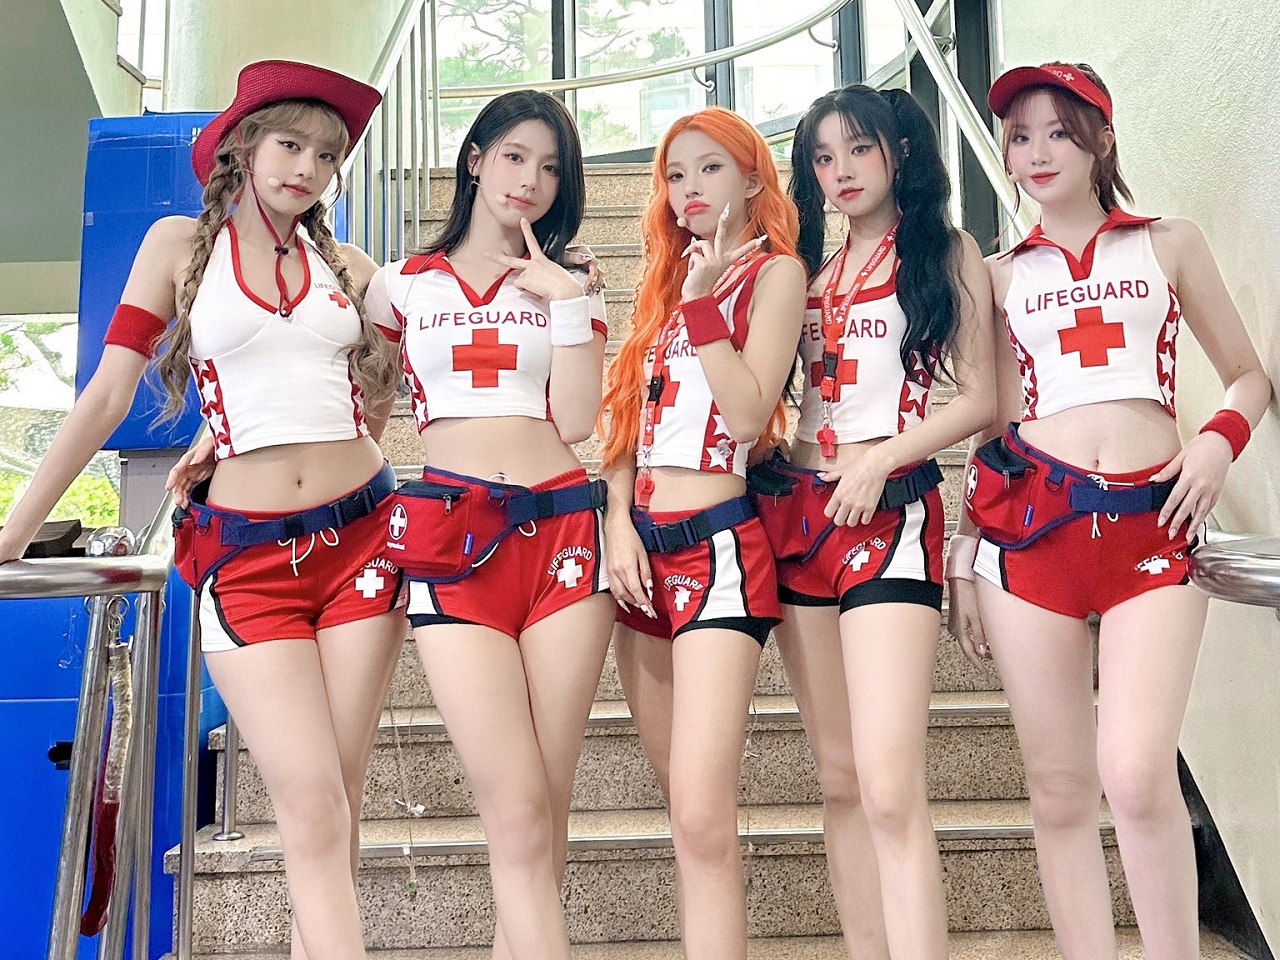 「赤十字マーク」をつけた“大胆ステージ衣装”で物議をかもしたK-POPアイドル、所属事務所が謝罪